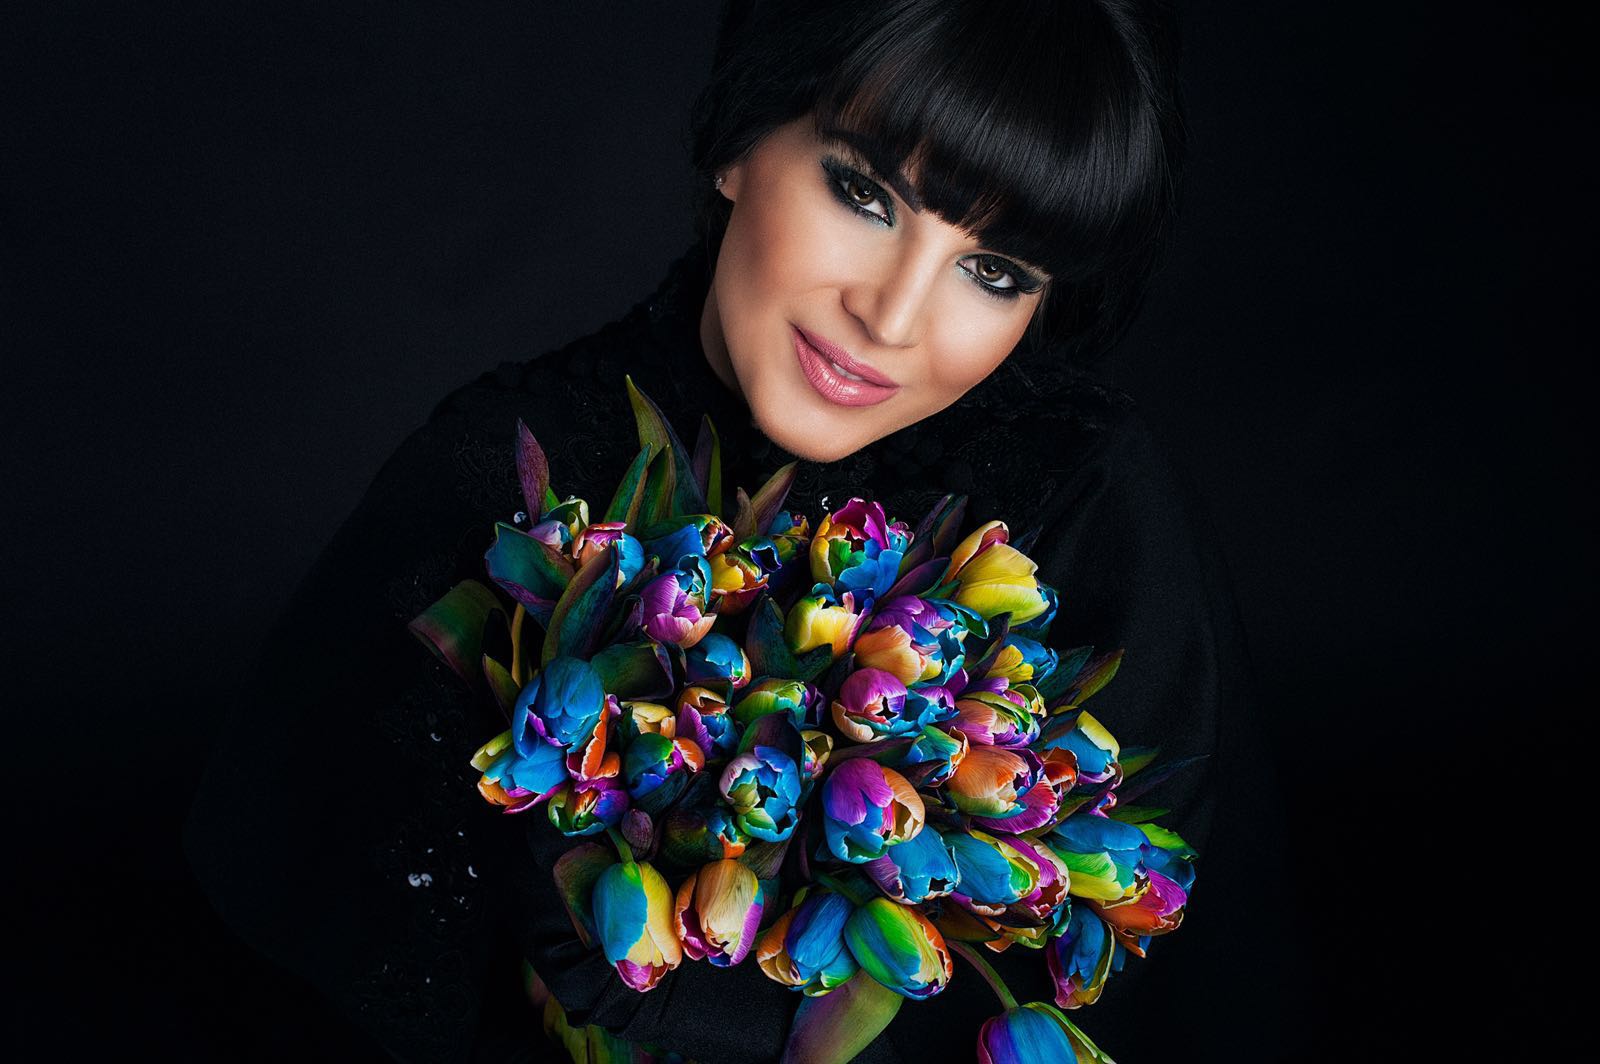 Florina Bogdan iubeşte trandafirii, aşa că a optat pentru o creaţie vestimentară realizată cu aceste flori minunate